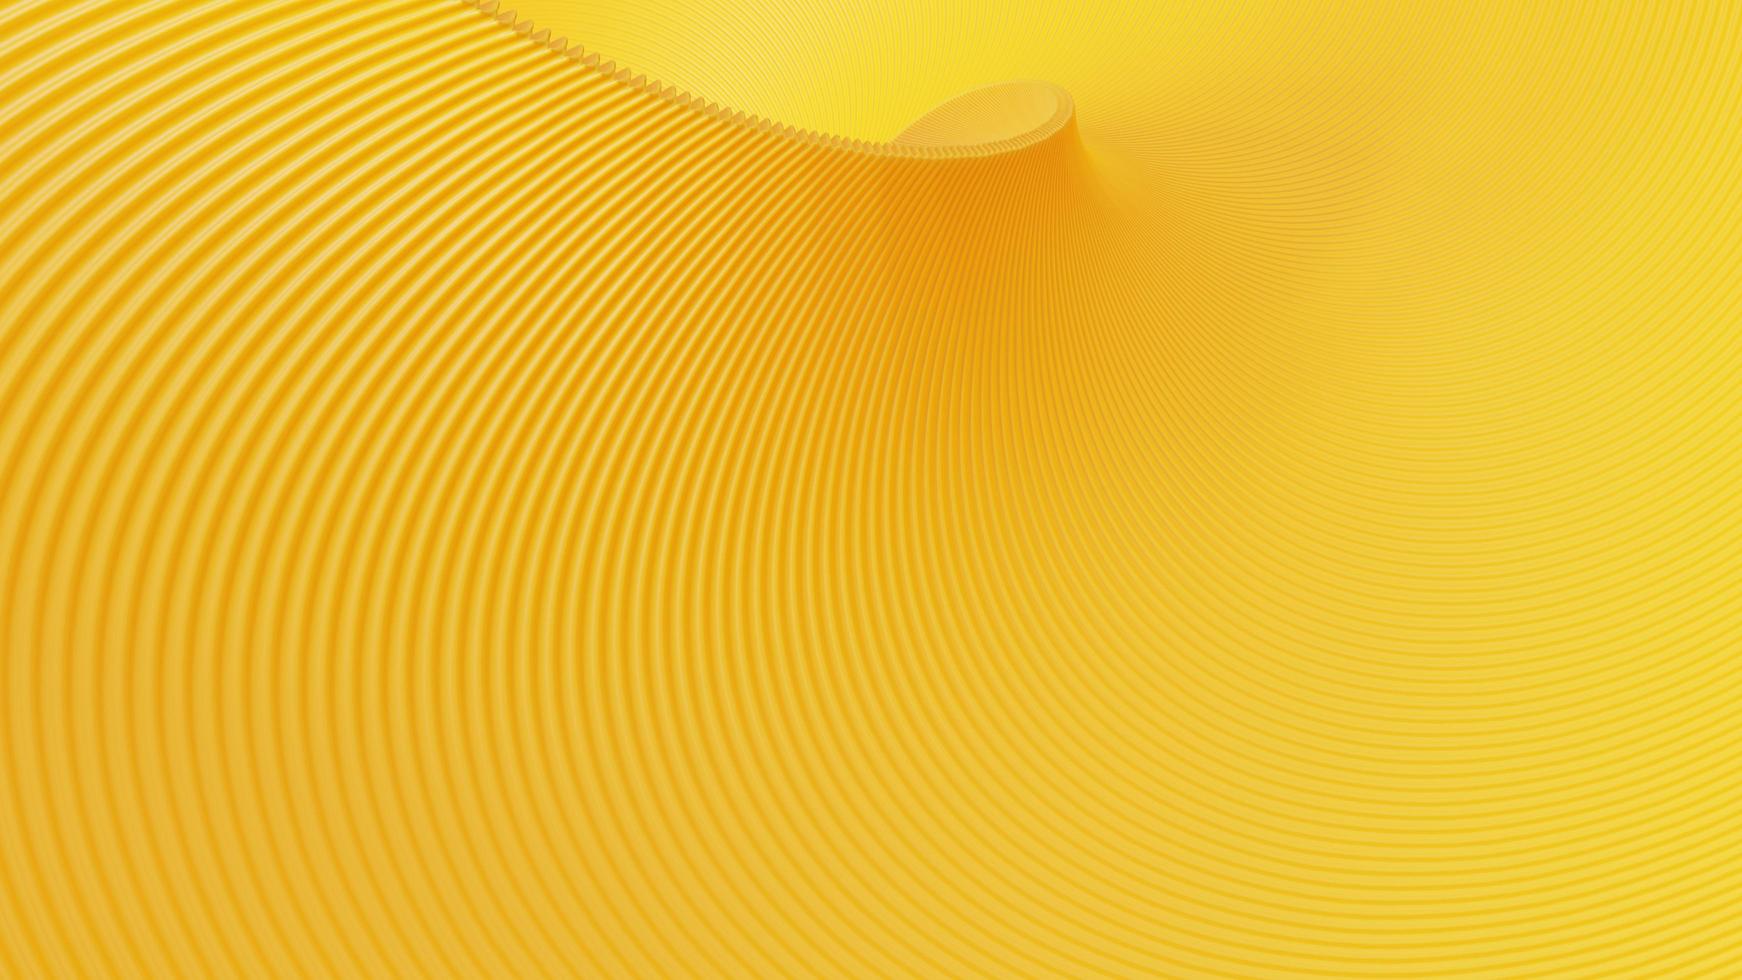 fondo amarillo con un hermoso patrón curvo. representación 3d foto